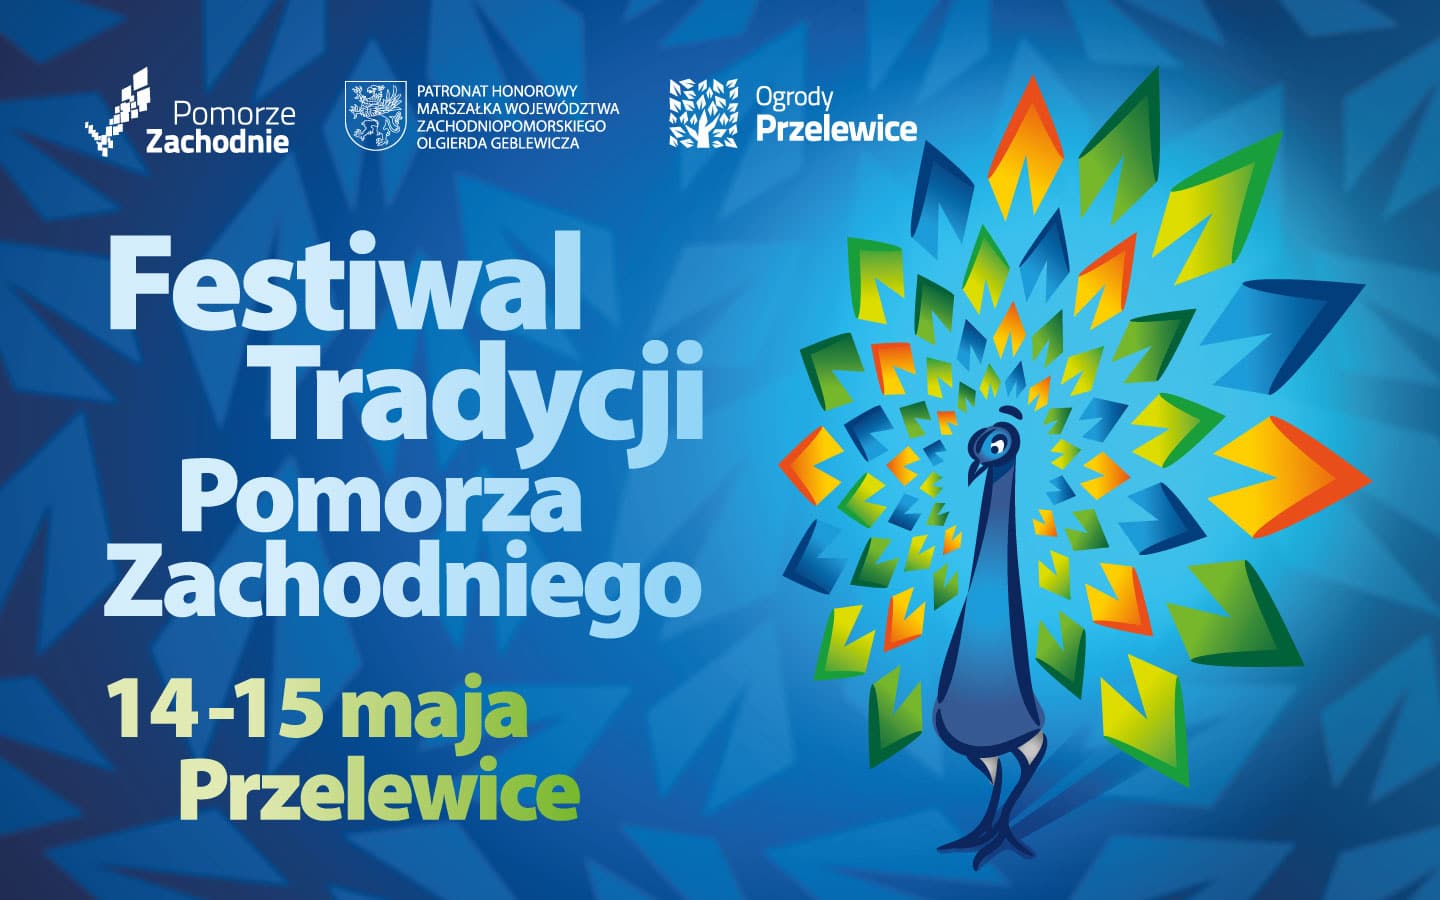 You are currently viewing Festiwal Tradycji Pomorza Zachodniego w Ogrodach Przelewice 14-15.05